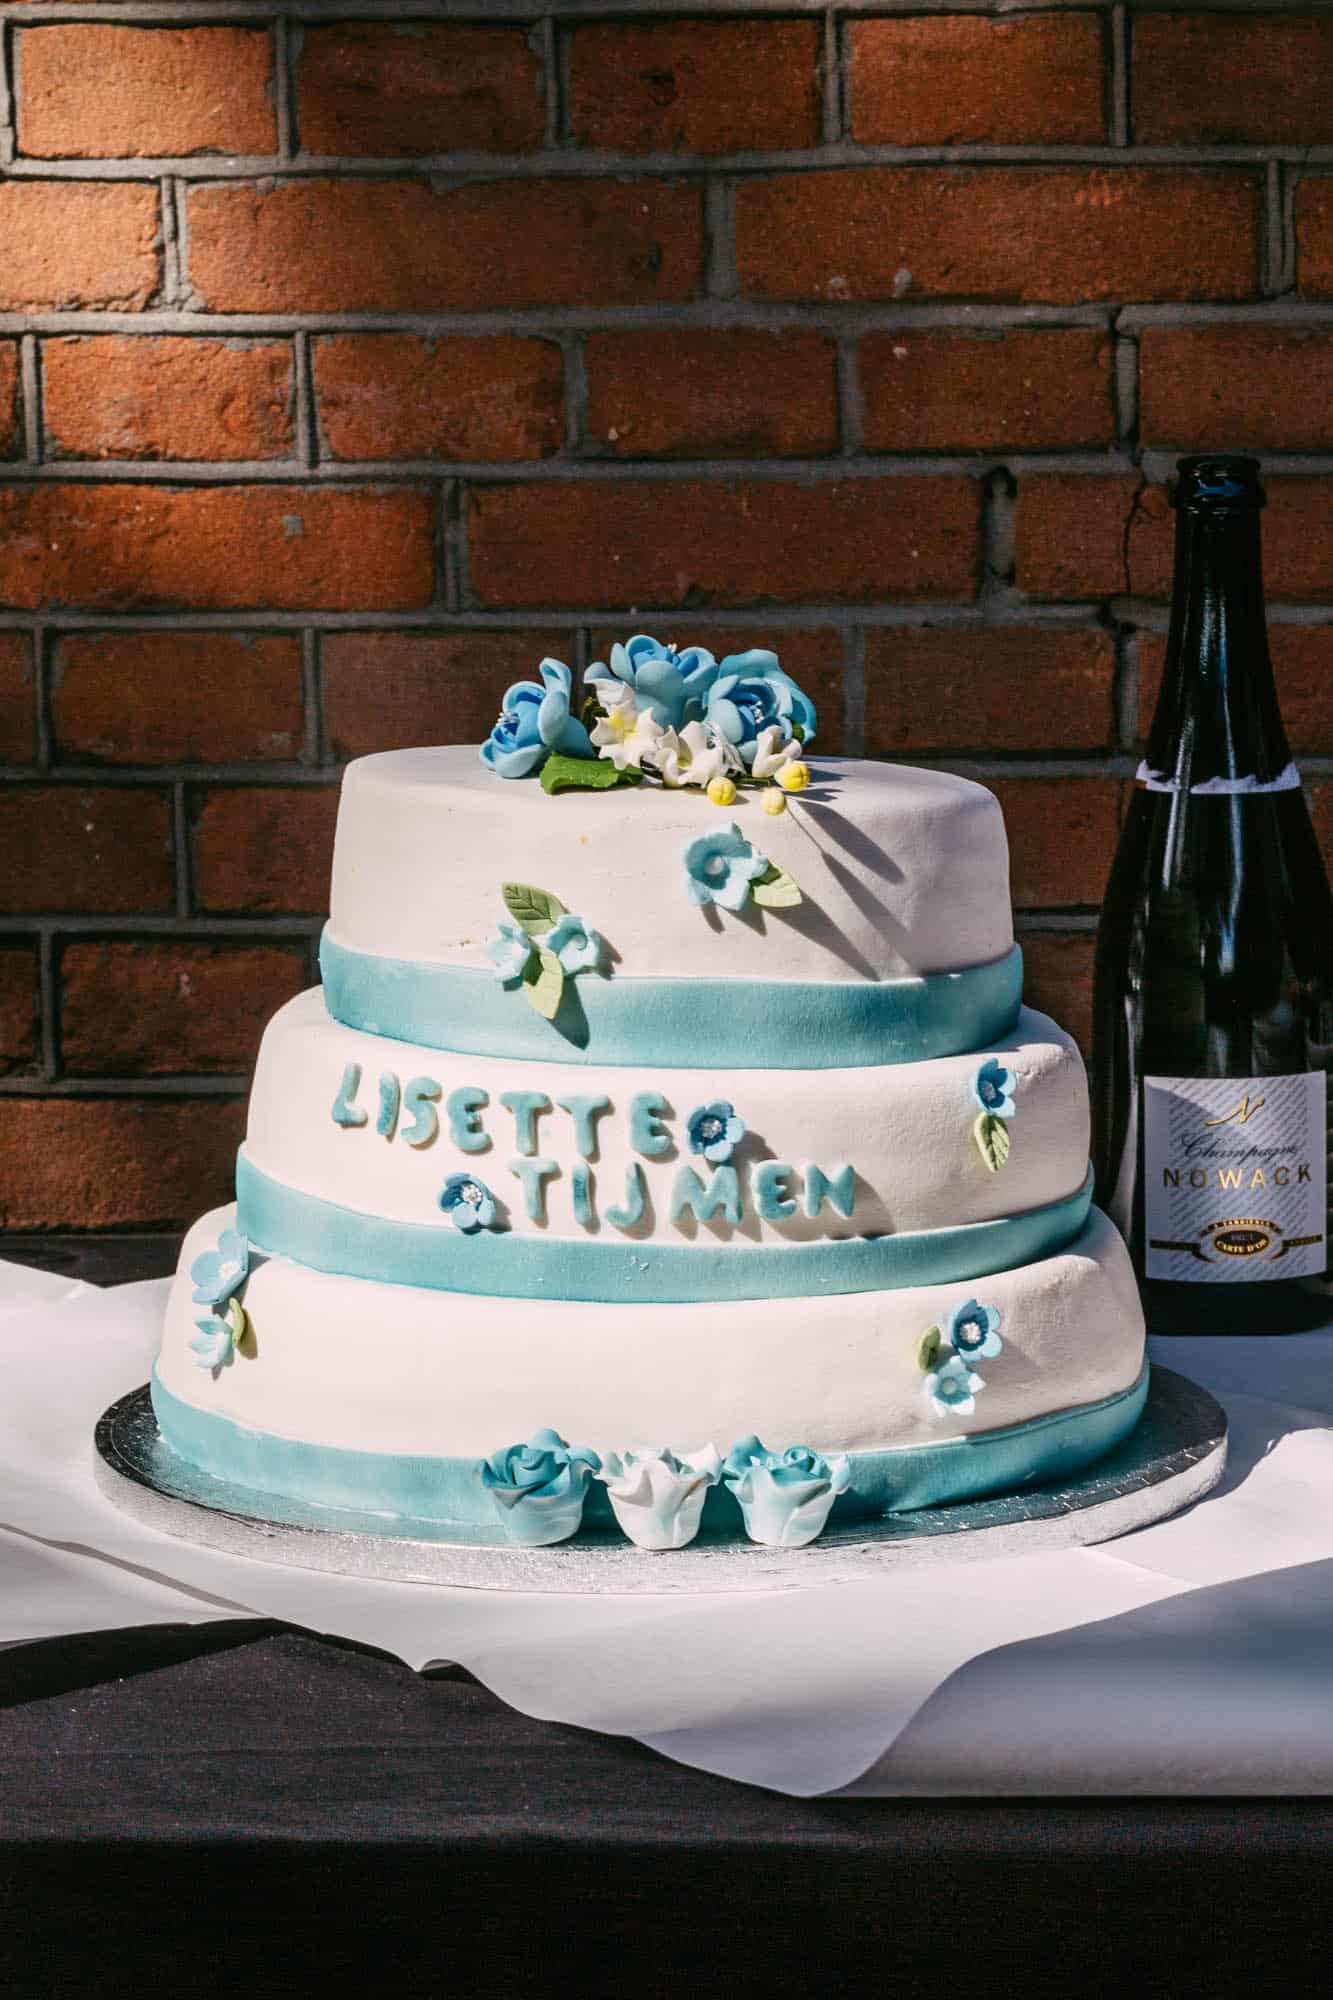 Beschrijving: Een bruidstaart met blauwe bloemen en een fles champagne.